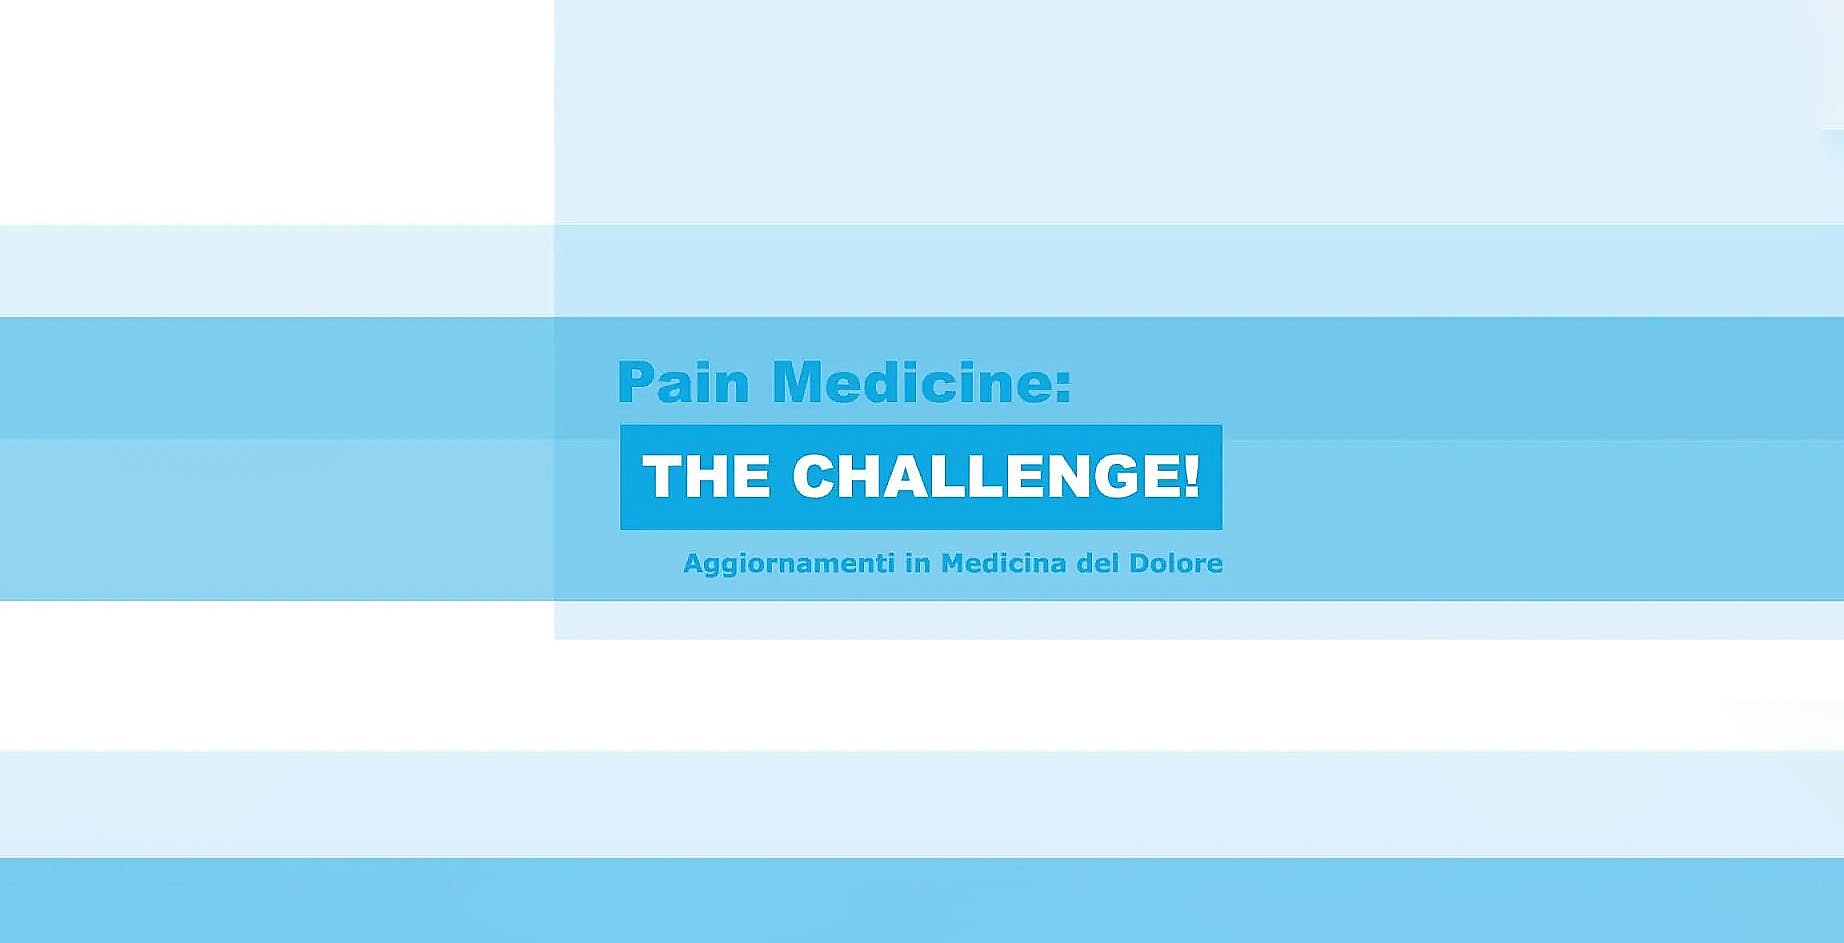 Scritta "Pain Medicine: The Challenge! Aggiornamenti in Medicina del Dolore" su sfondo composto da bande di varie tonalità di azzurro.